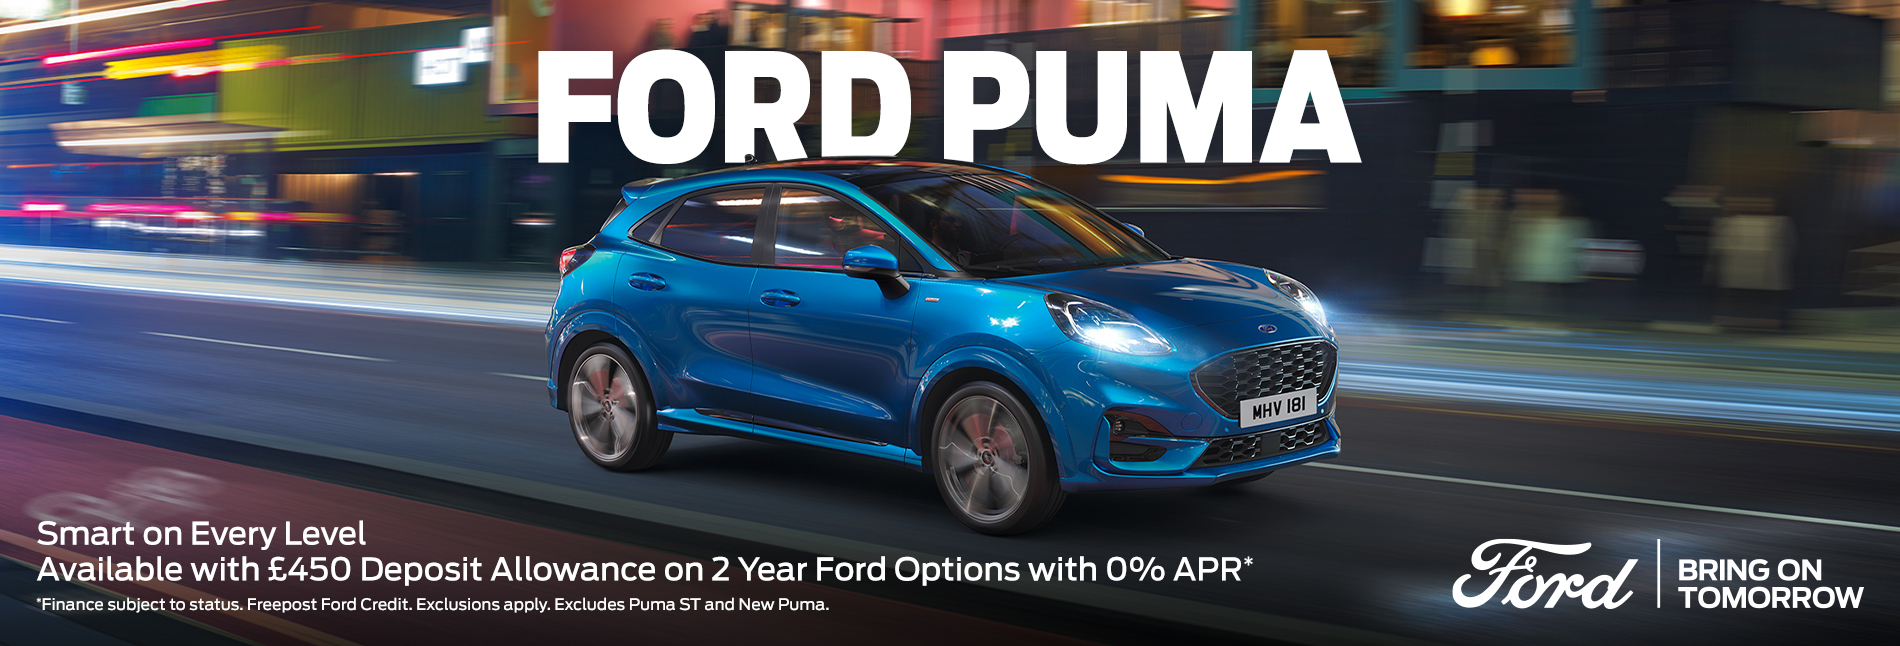 Ford Puma 0% APR Offer